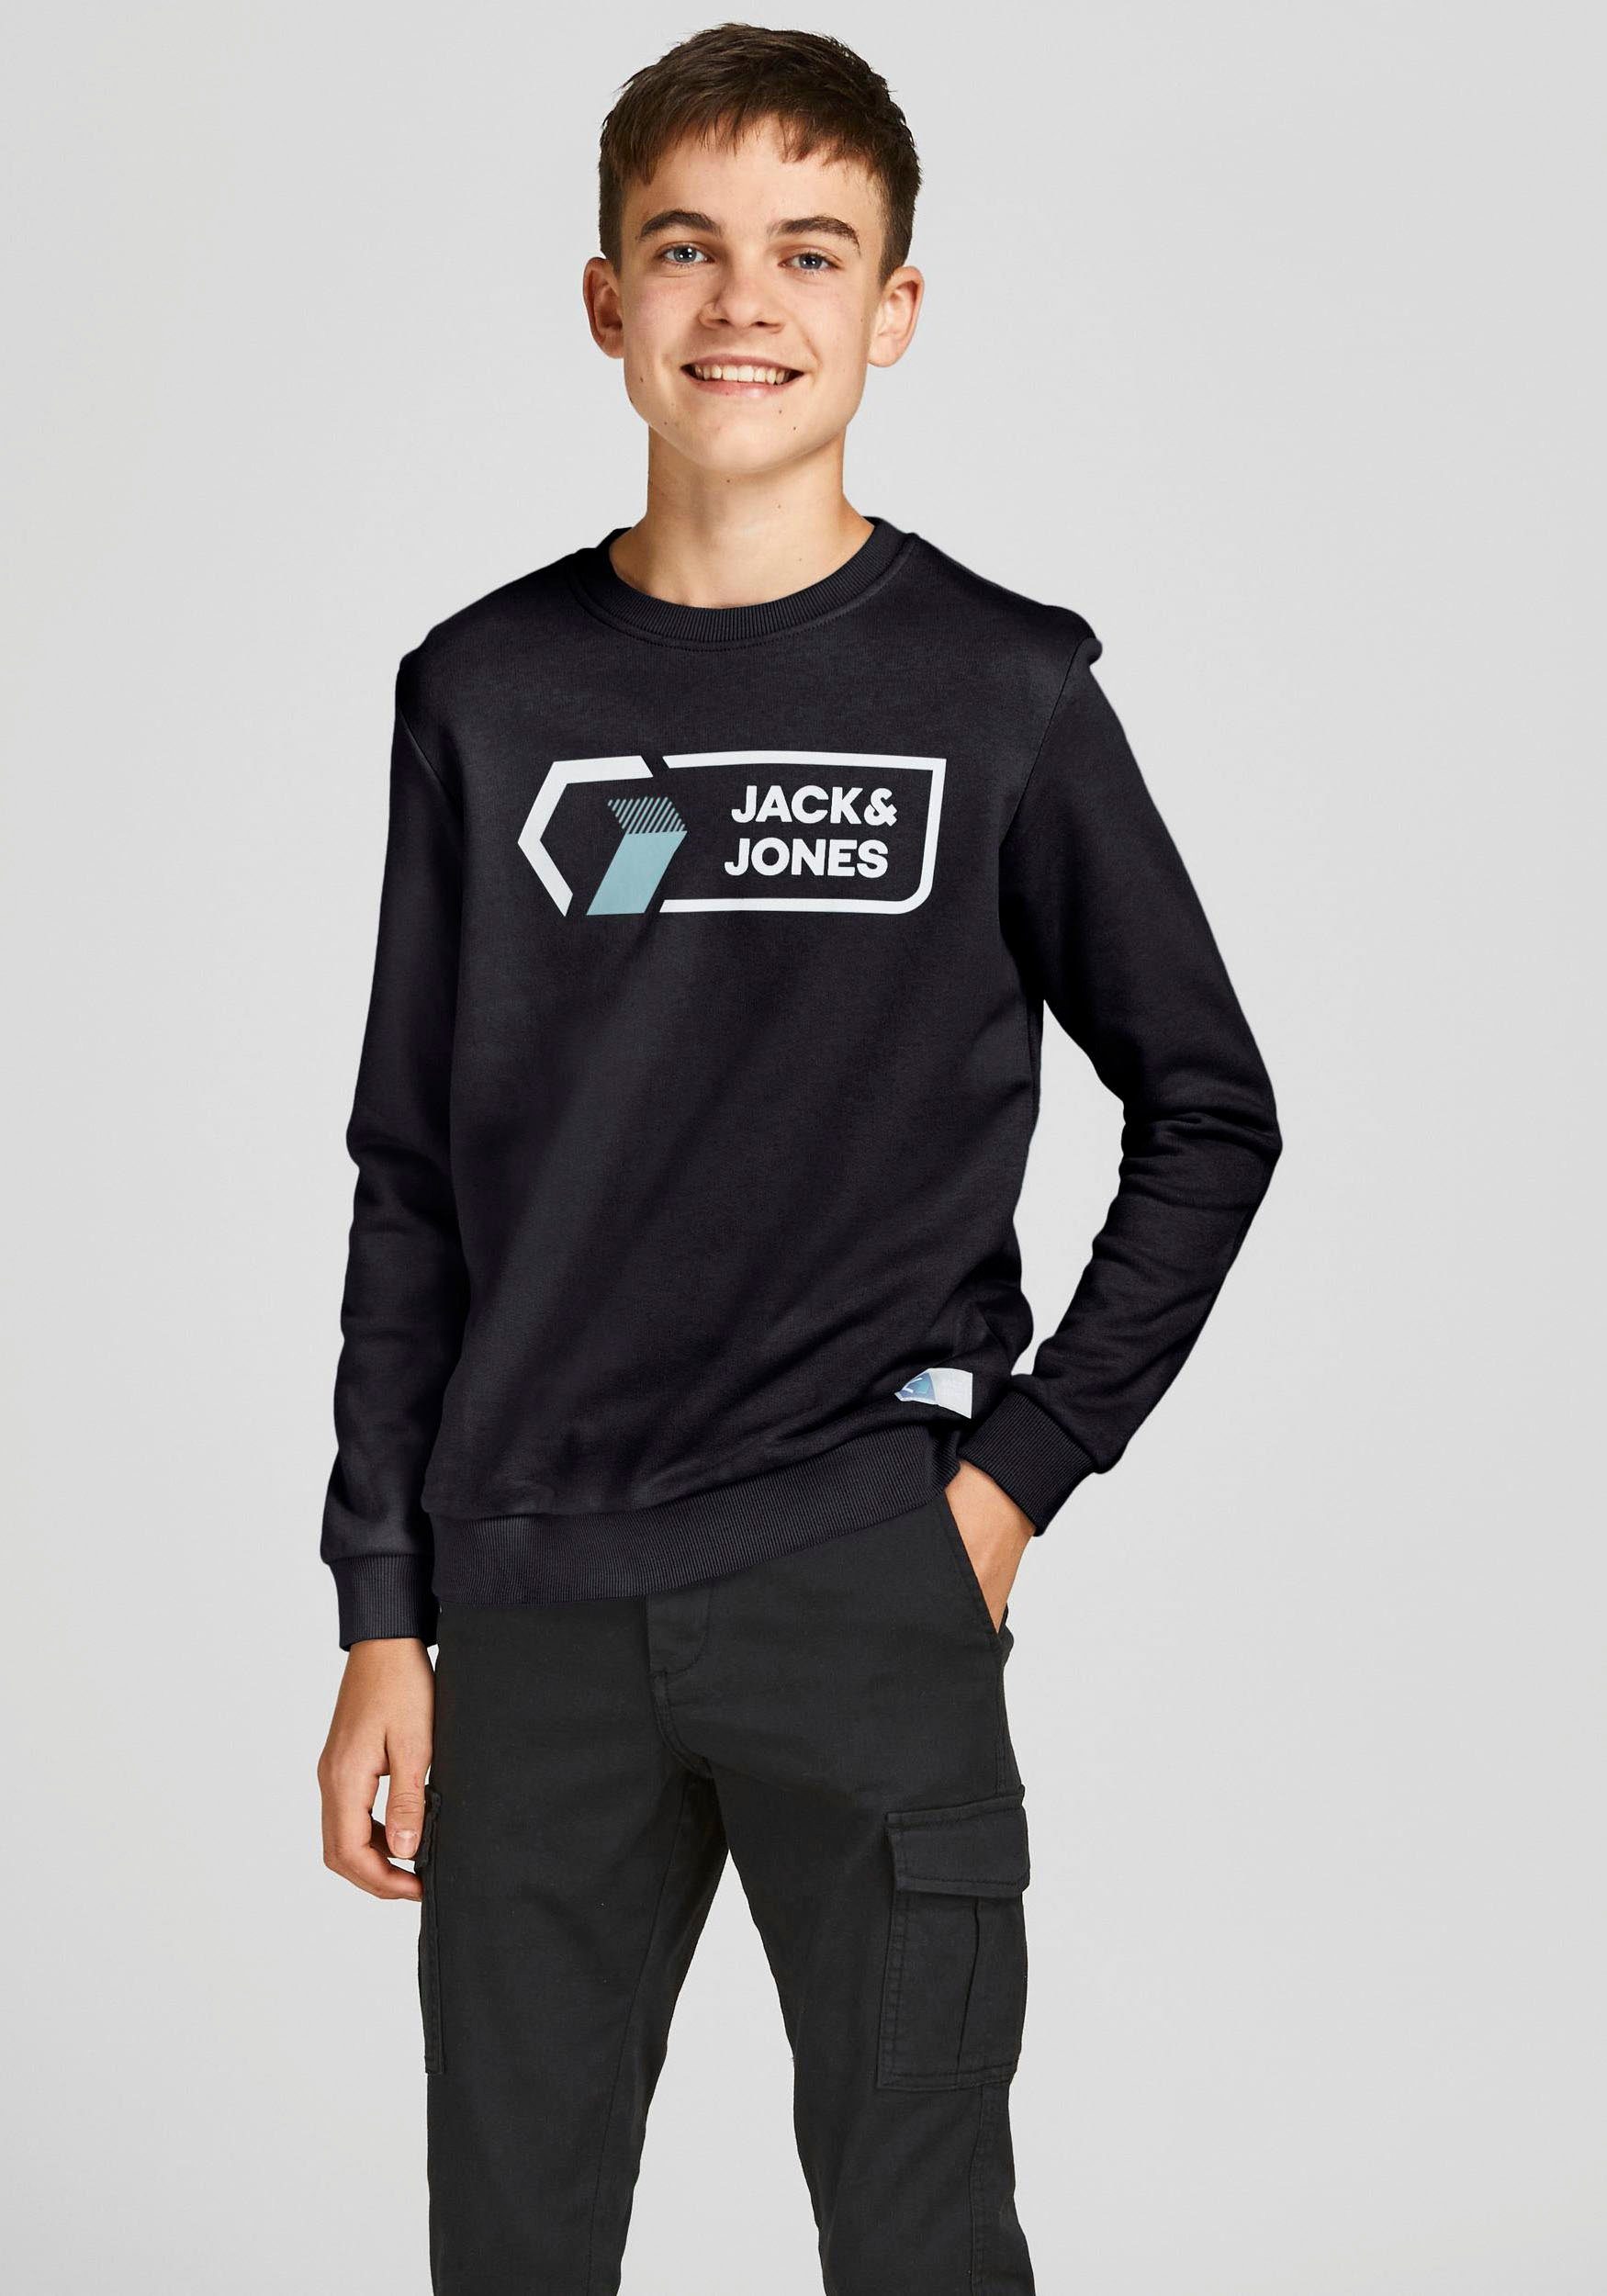 Kinder Teens (Gr. 128 - 182) Jack & Jones Junior Sweatshirt